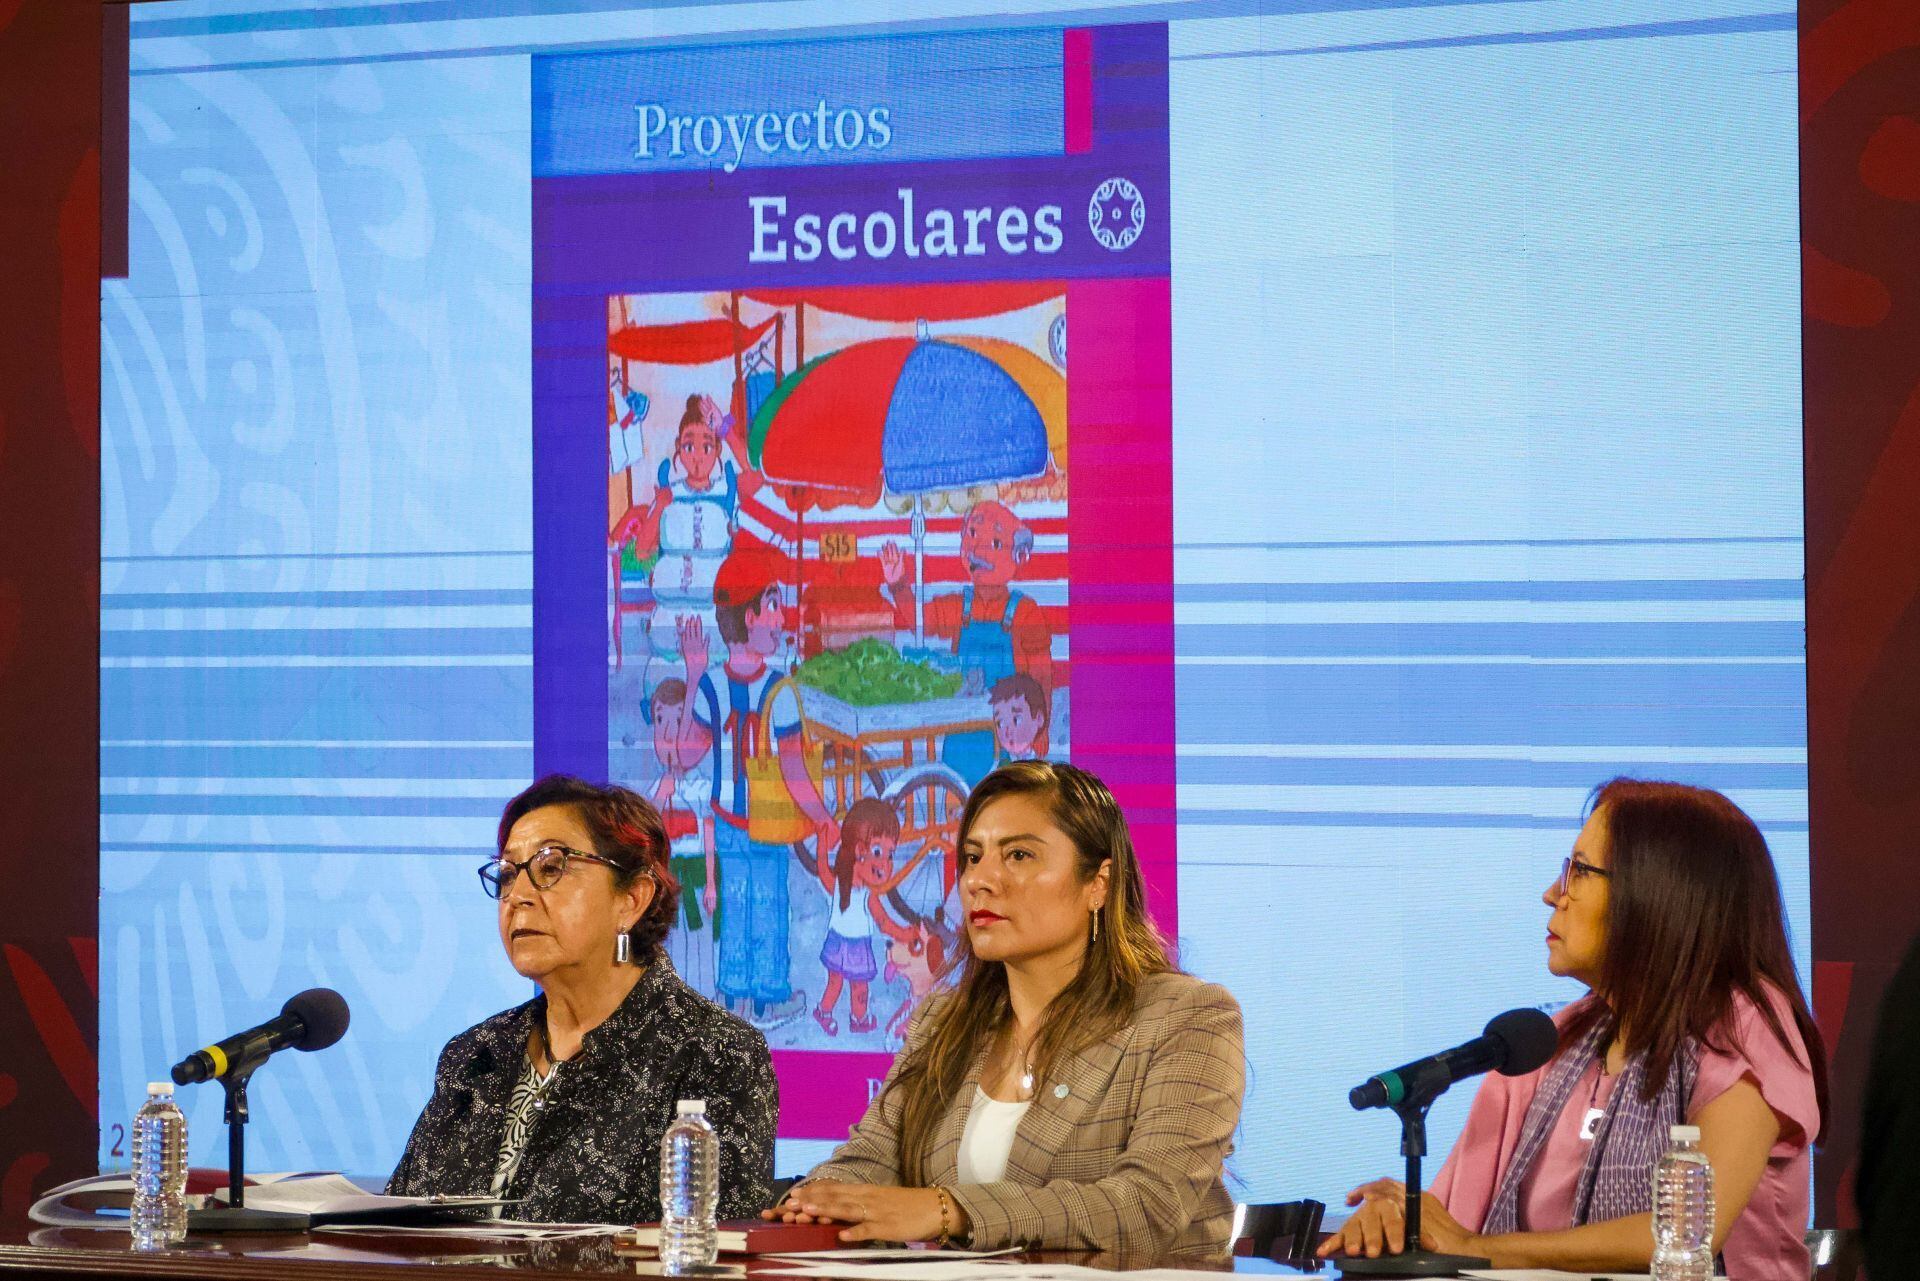 Libros de la SEP: ‘Encontramos errores cognitivos en textos de primaria’, advierte Mexicanos Primero